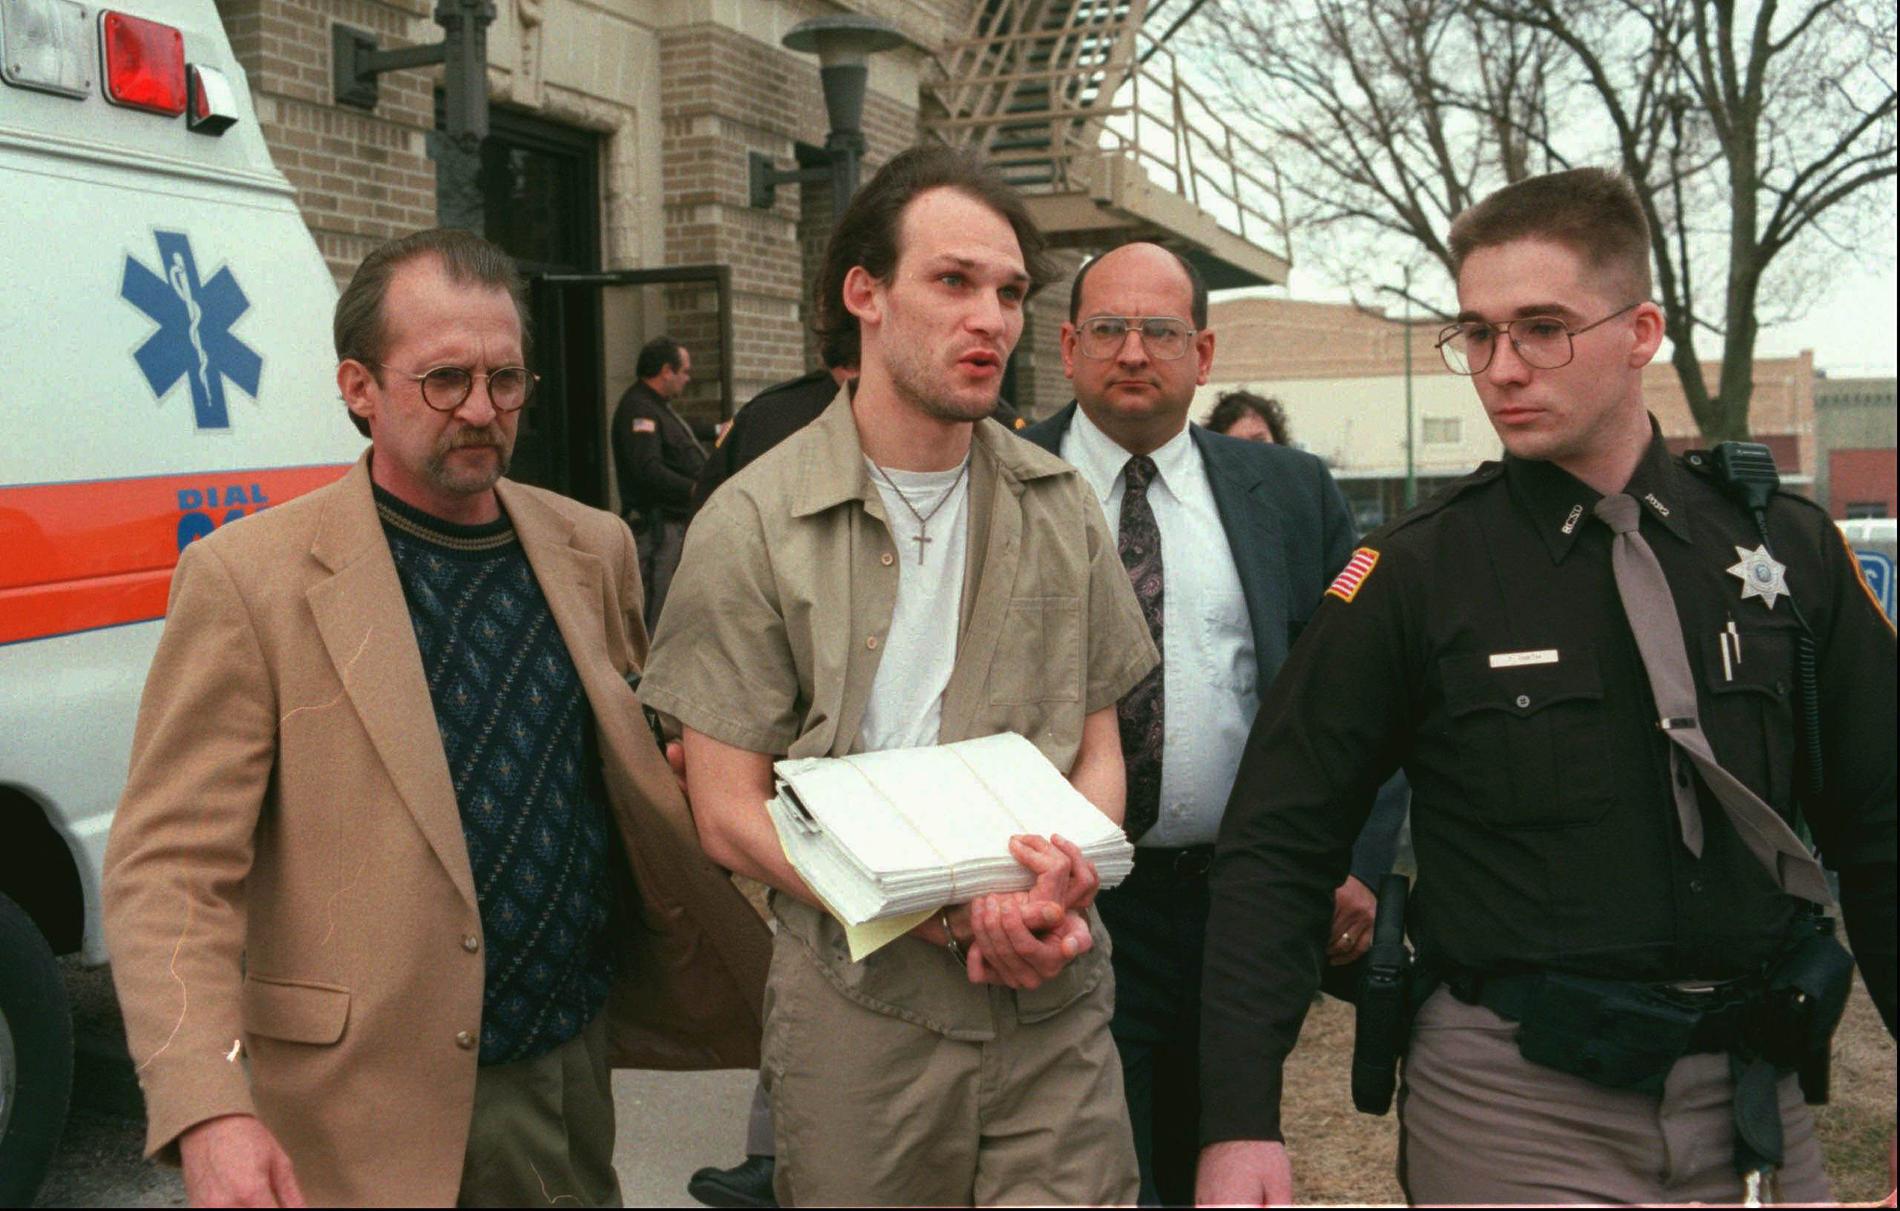 John Lotter utförde morden som blev filmen "Boys don't cry". Här förs han ut från domstolen efter att ha fått dödsdomen den 21 februari 1996.